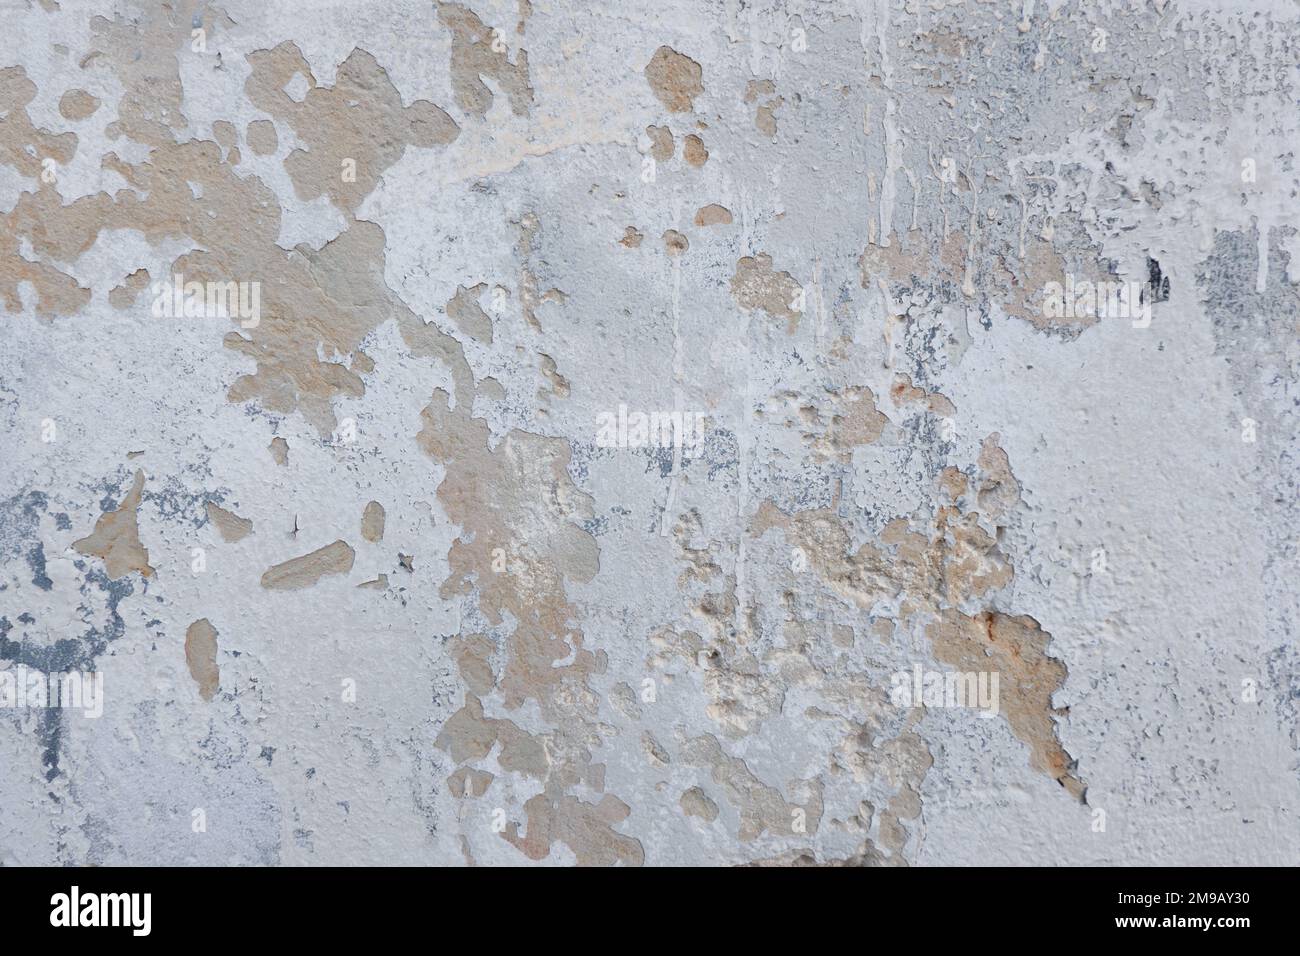 Weiß grunge alten Beton Stuck Wand Textur Hintergrund. Abstrakt verwitterte geschälte Gipswand mit abfallenden Farbflocken Hintergrund Stockfoto